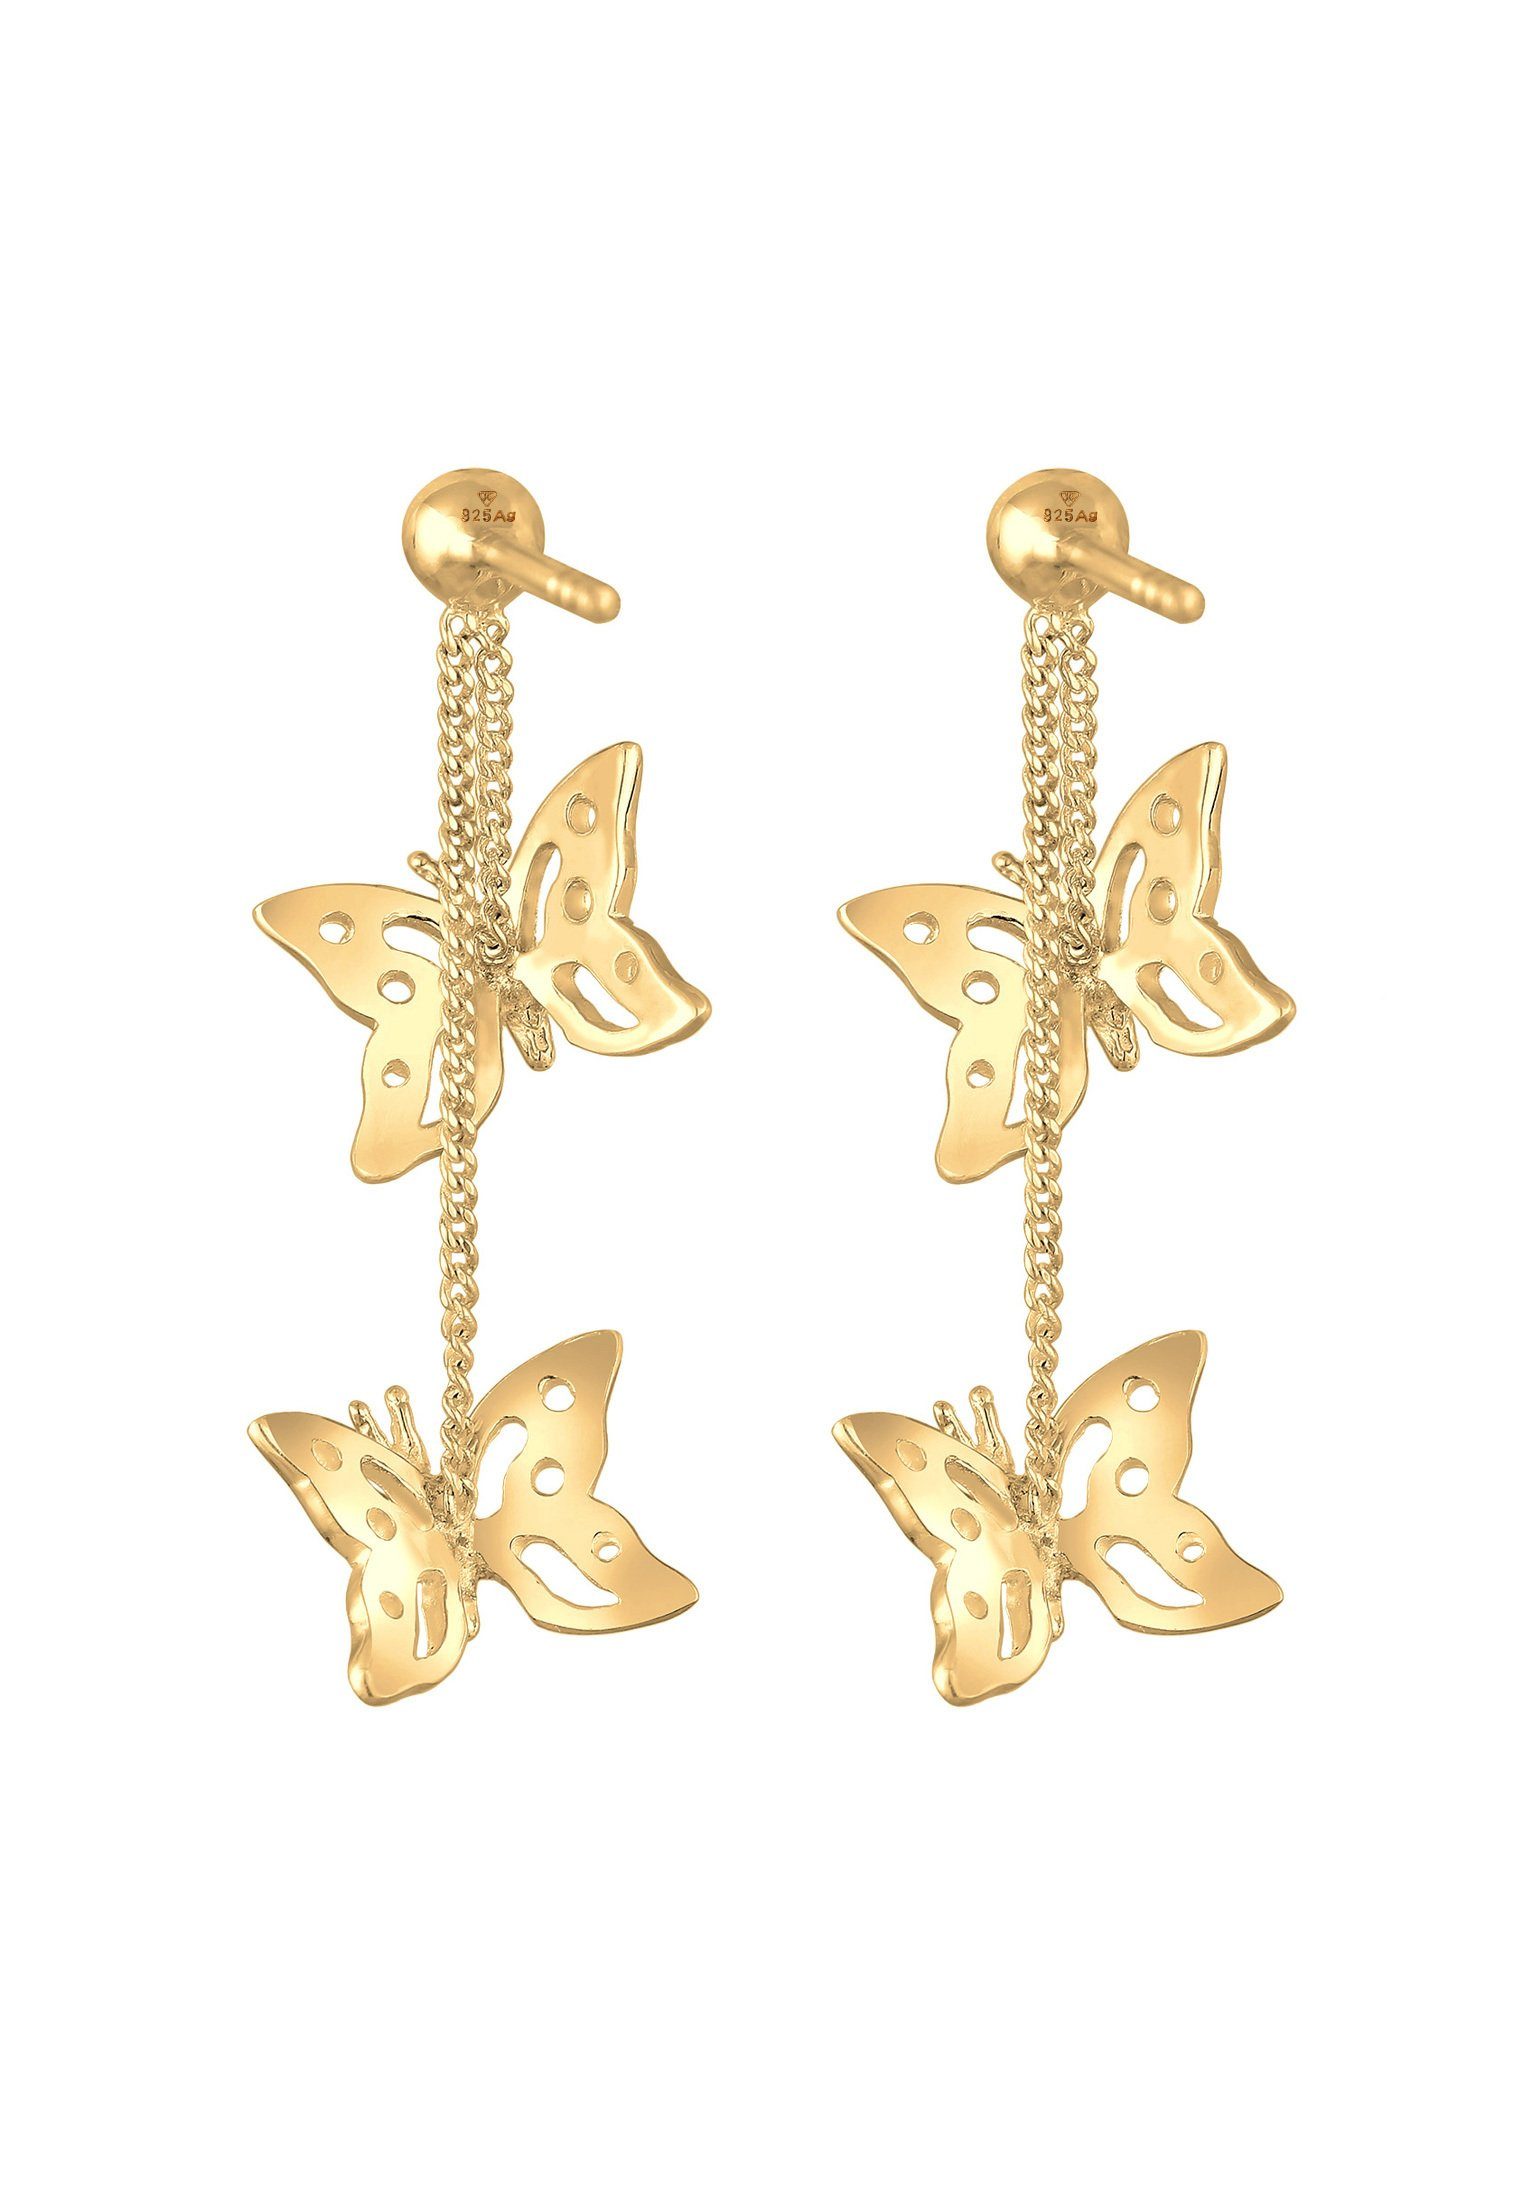 Elli Silber Schmetterling Natur Gold Paar Ohrhänger 925, Schmetterling Kristalle